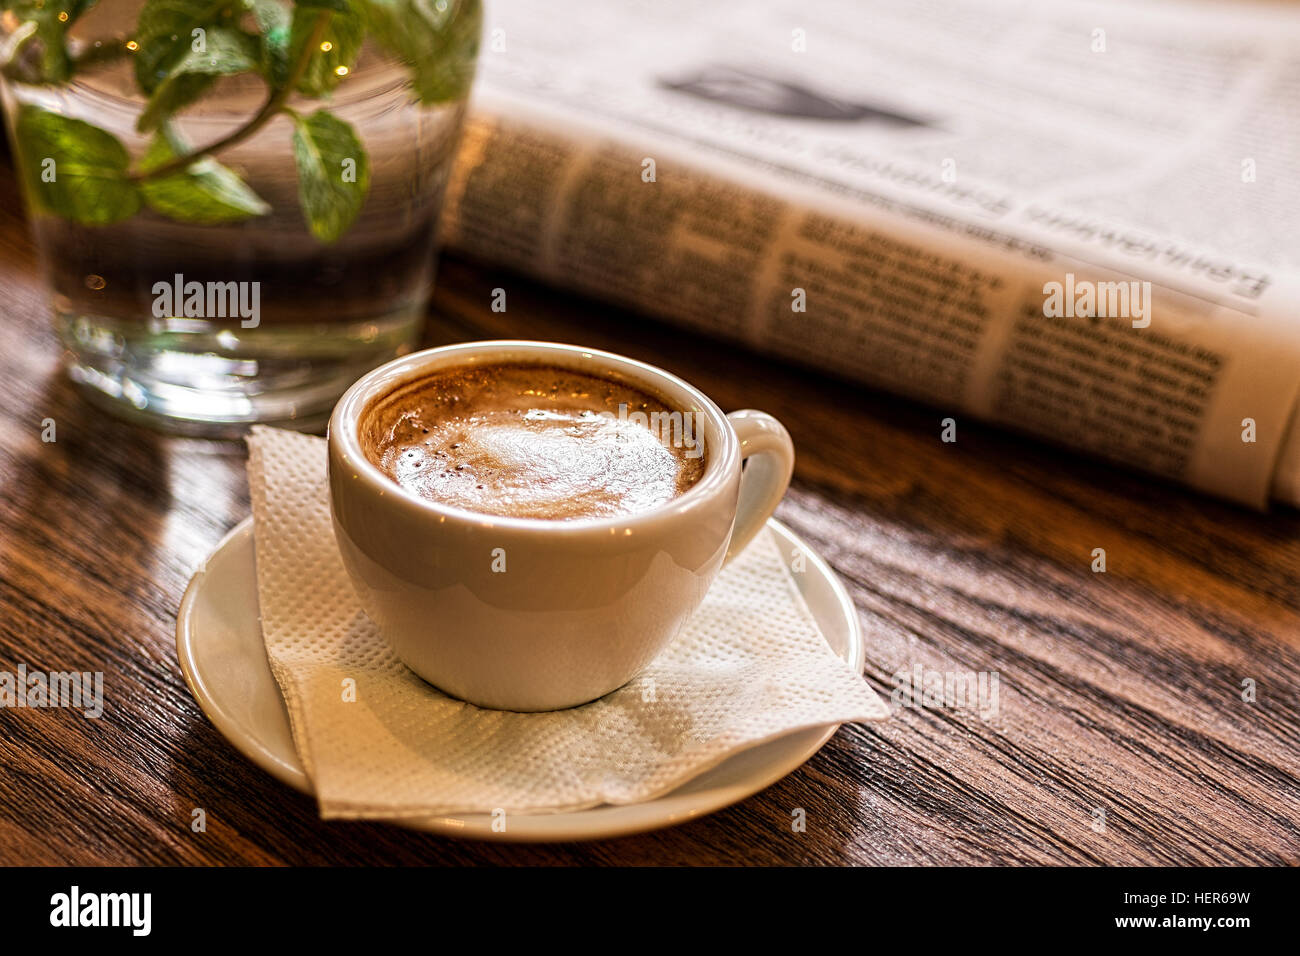 Tazza di caffè, acqua e giornale su un tavolo di legno. Buona mattina o pausa caffè concetto. Foto Stock